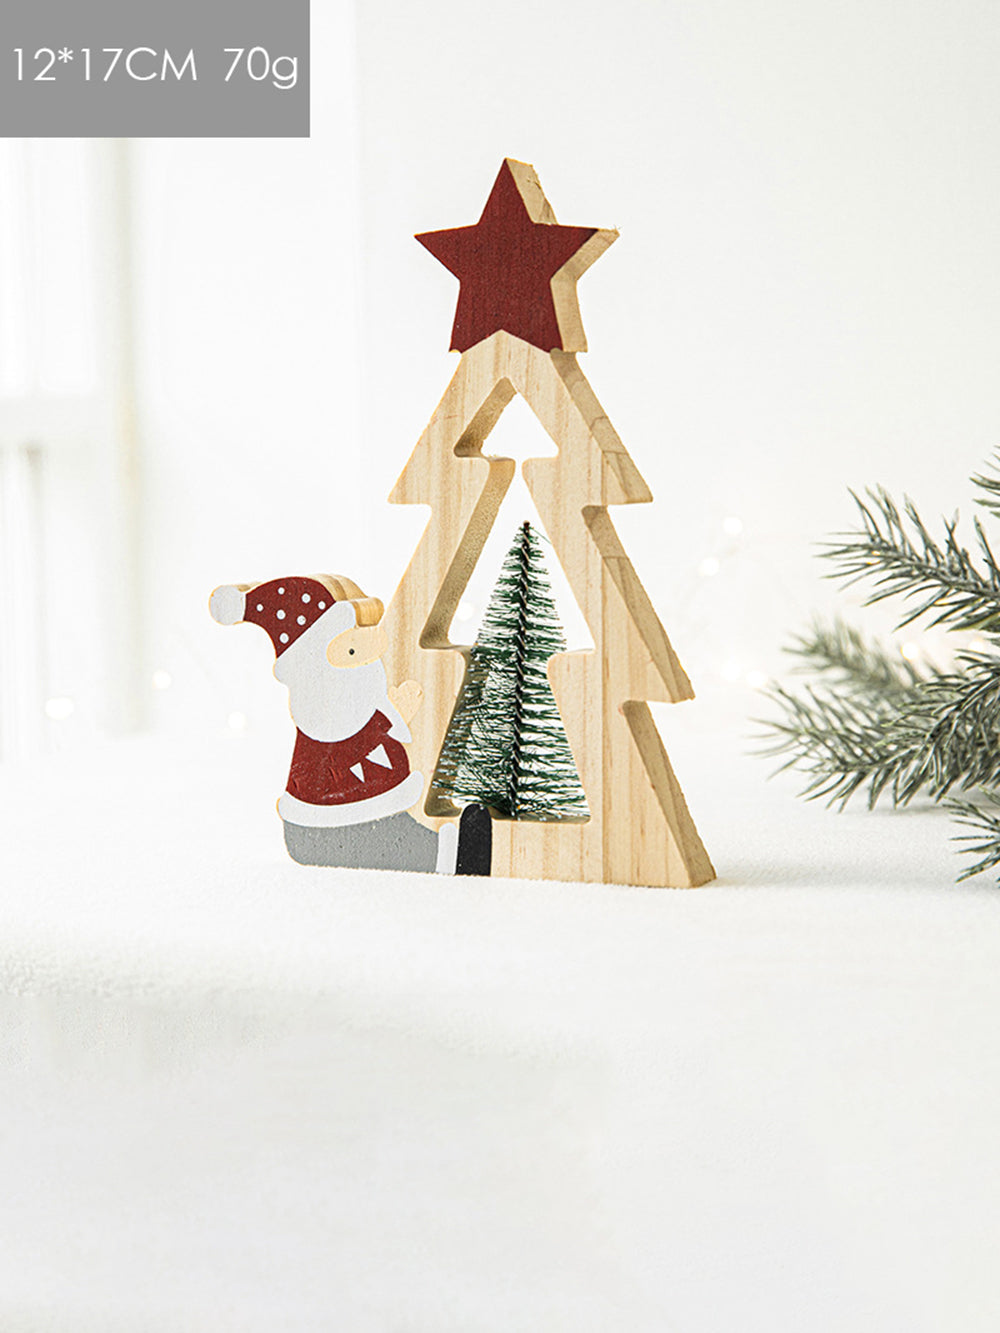 Weihnachtsmann-Holzornamente mit fünfzackigen Sternen